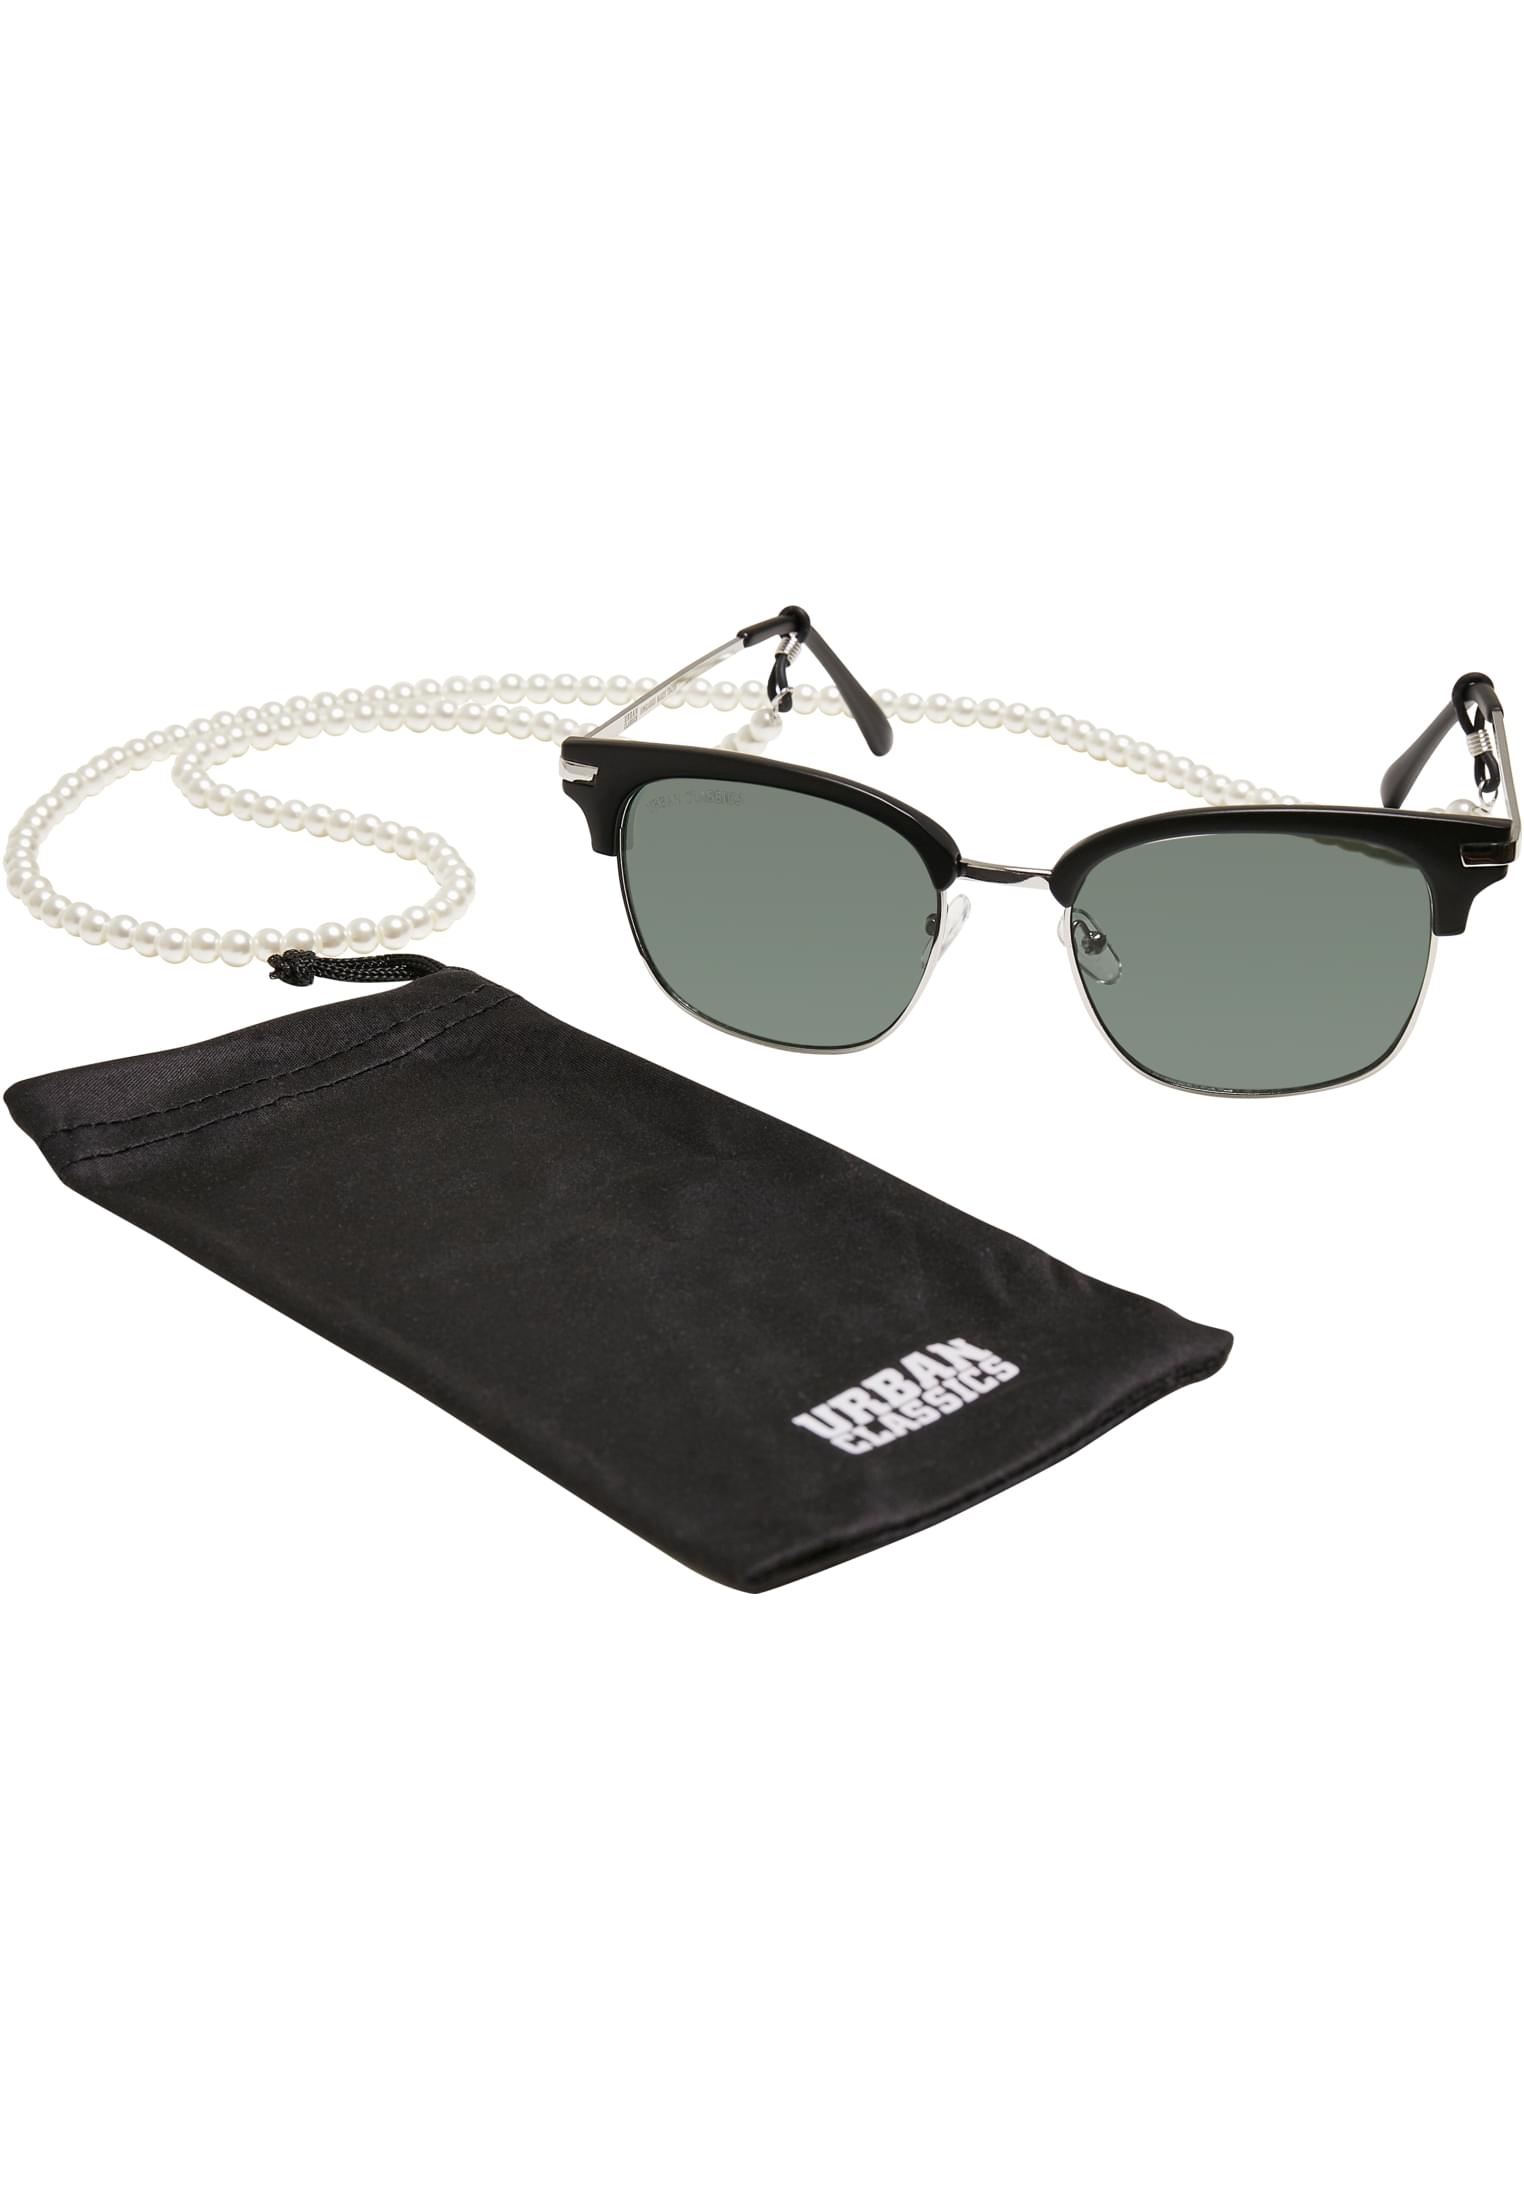 Crete sunglasses with chain black/green